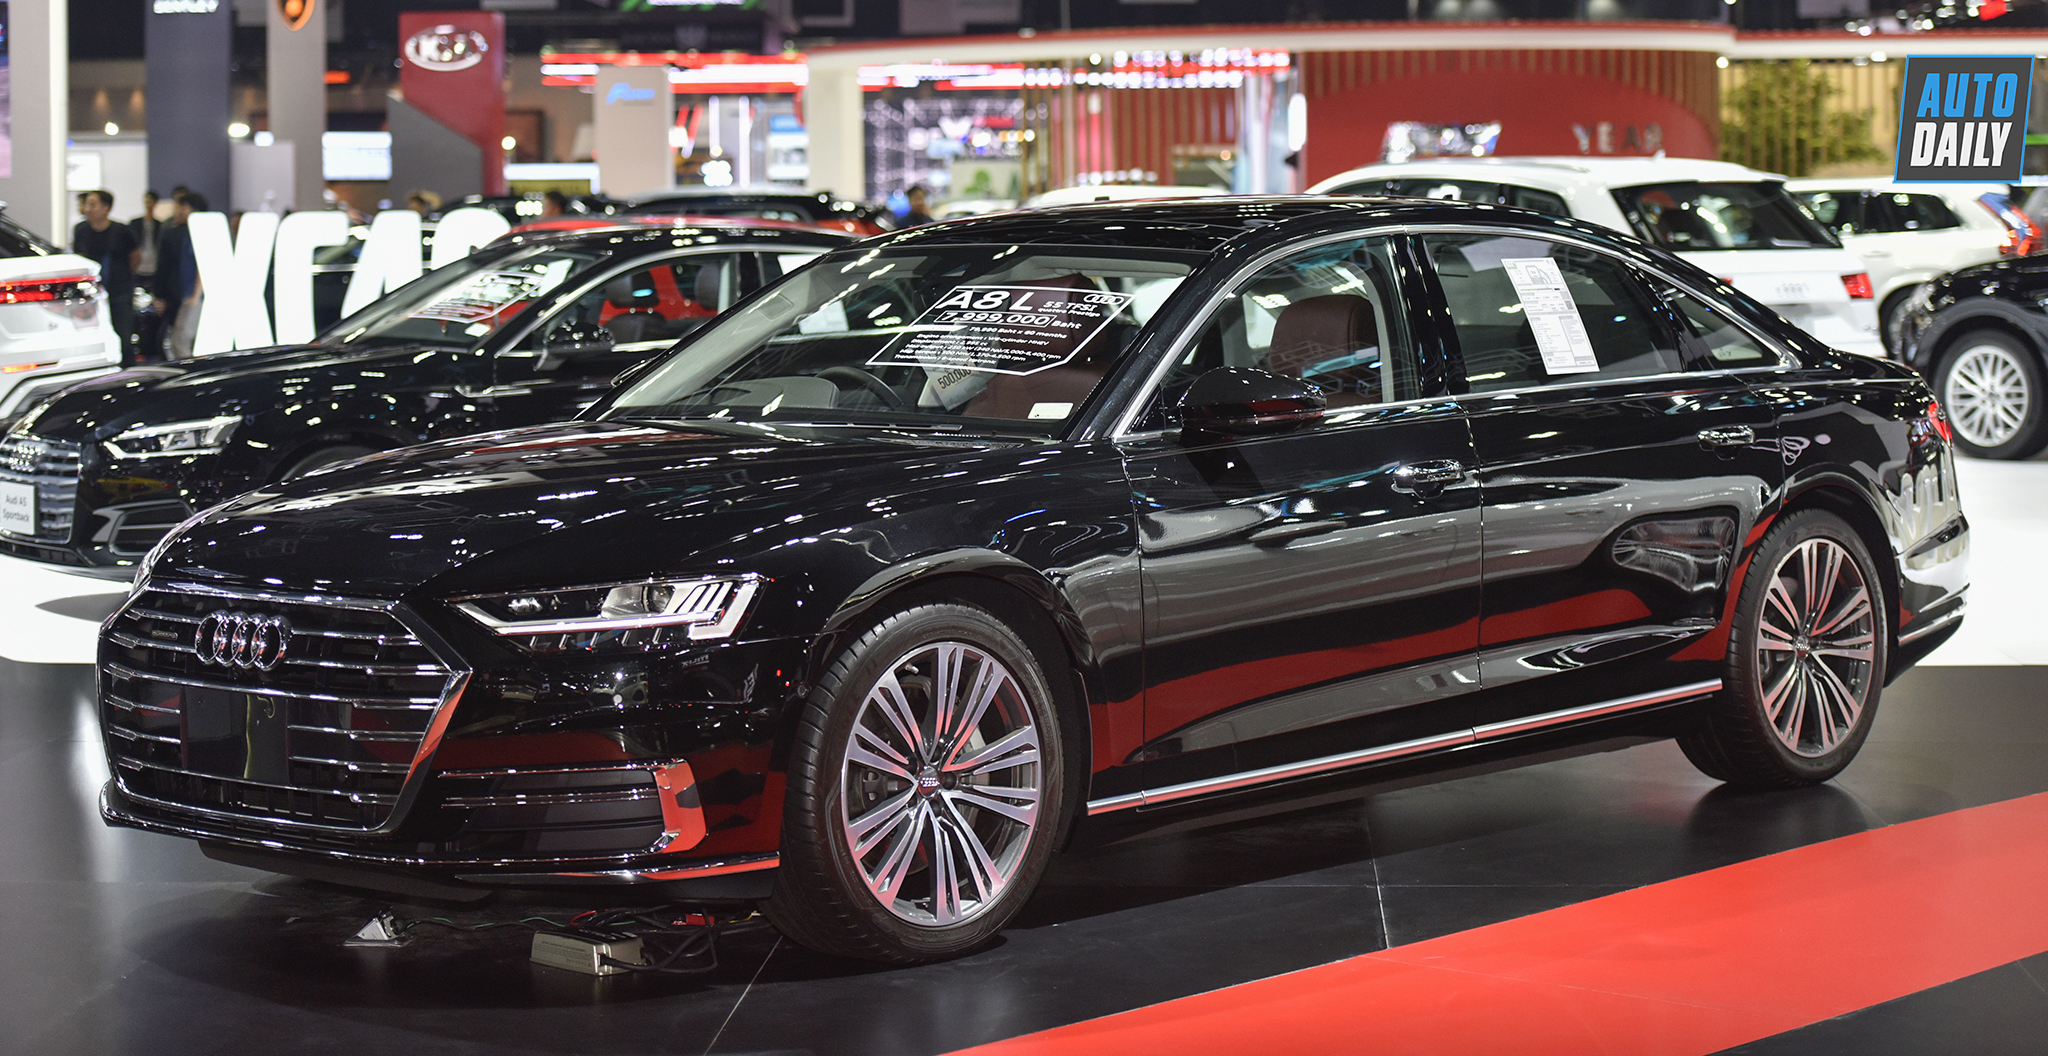 Chi tiết Audi A8L giá hơn 5,8 tỷ đồng tại Thái Lan, chờ ngày về VN